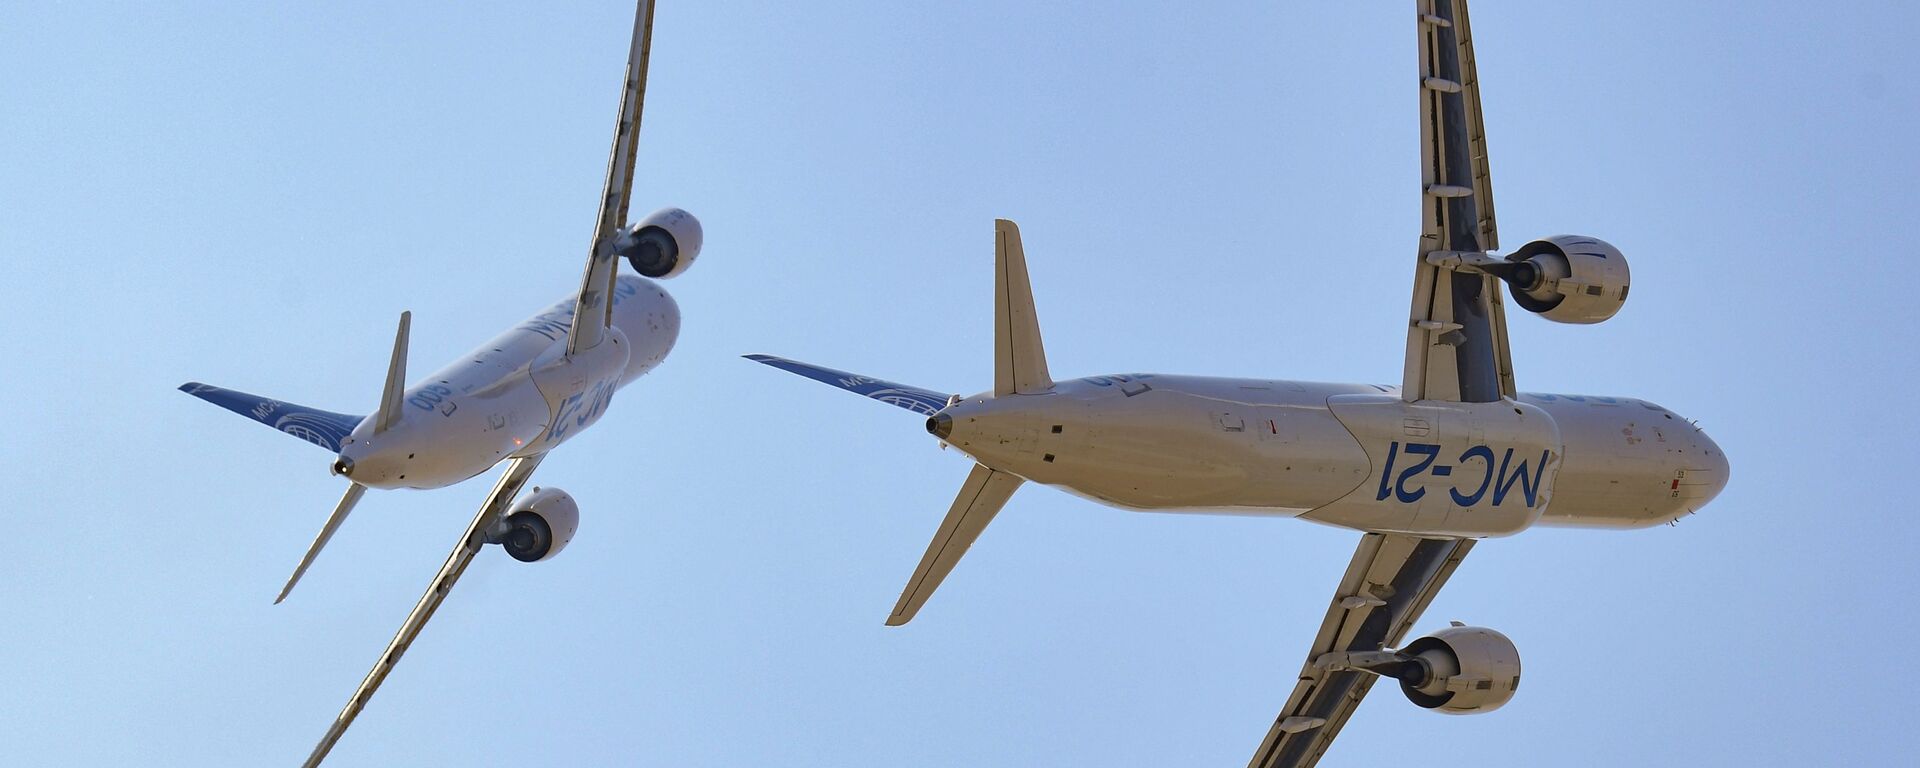 Пассажирские самолеты МС-21-300 и МС-21-310 во время выполнения летной программы на Международном авиационно-космическом салоне МАКС-2021 - Sputnik Mundo, 1920, 03.08.2021